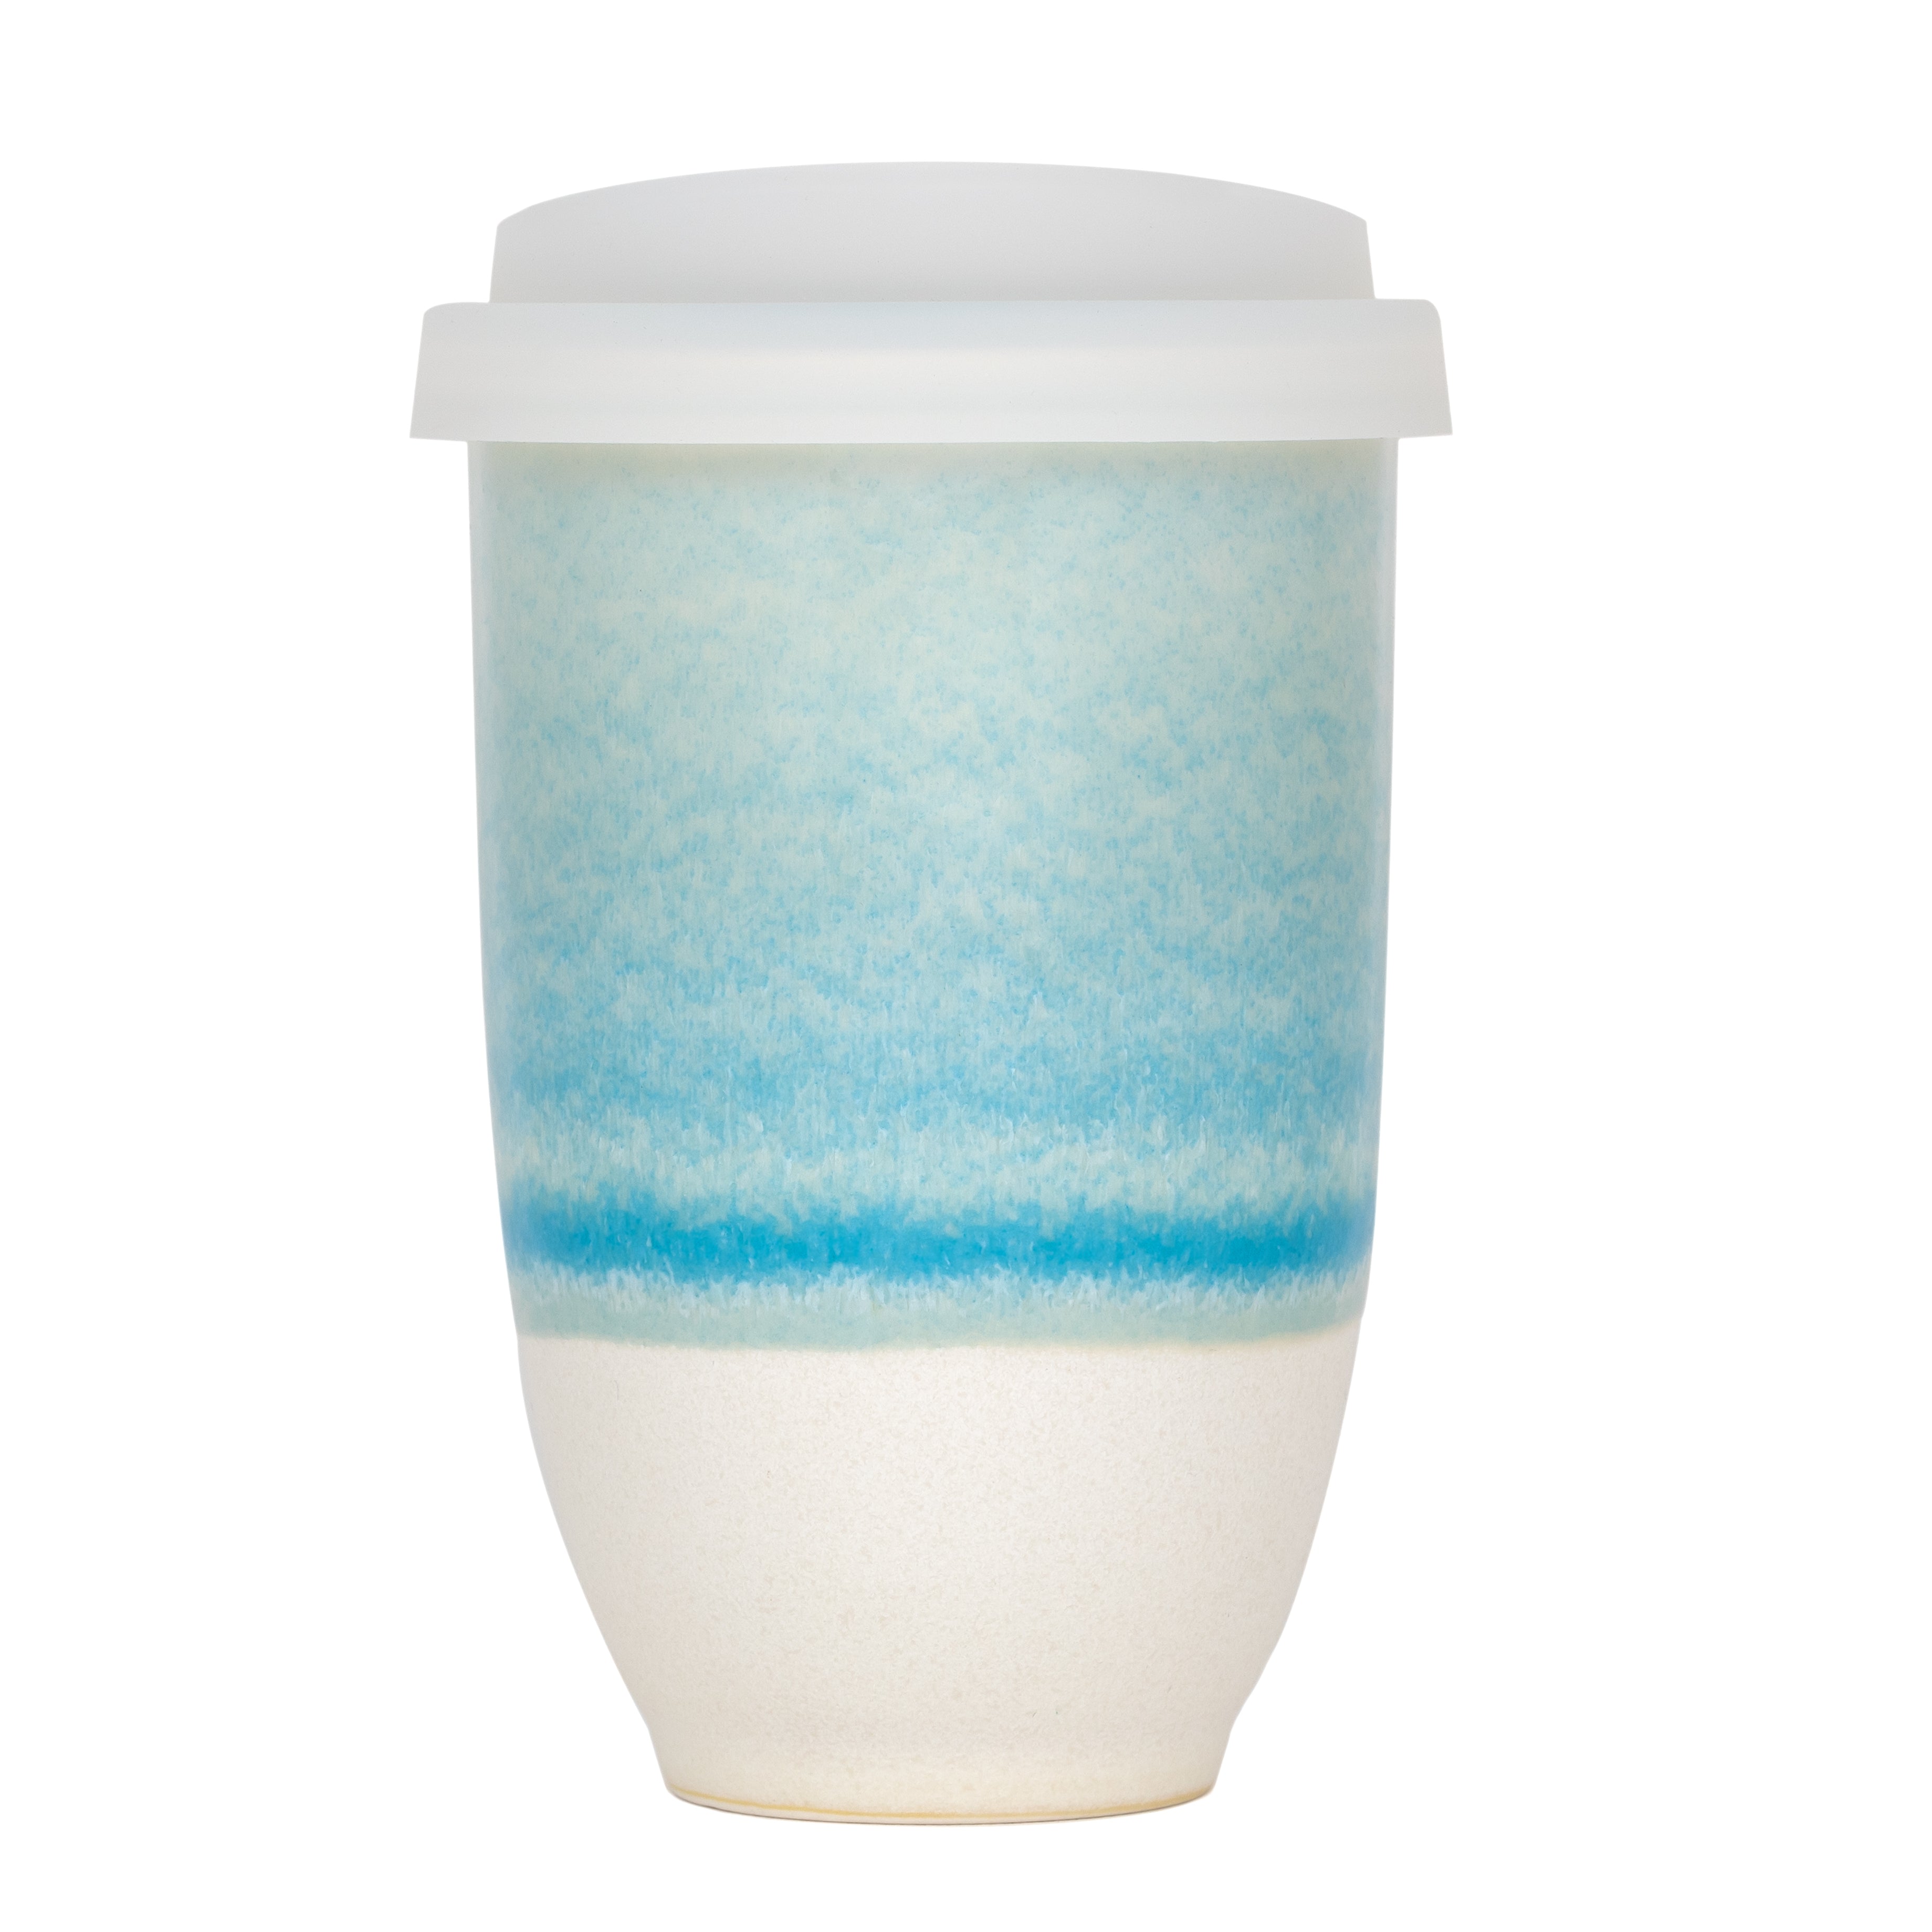 NOVA CERAMICS Reusable Coffee Cup, Ceramic Travel Mug with Lid, Portable  Coffee Cup, Unique to Go Mug, Aqua with Running Purple Glaze, 12oz, Nebula